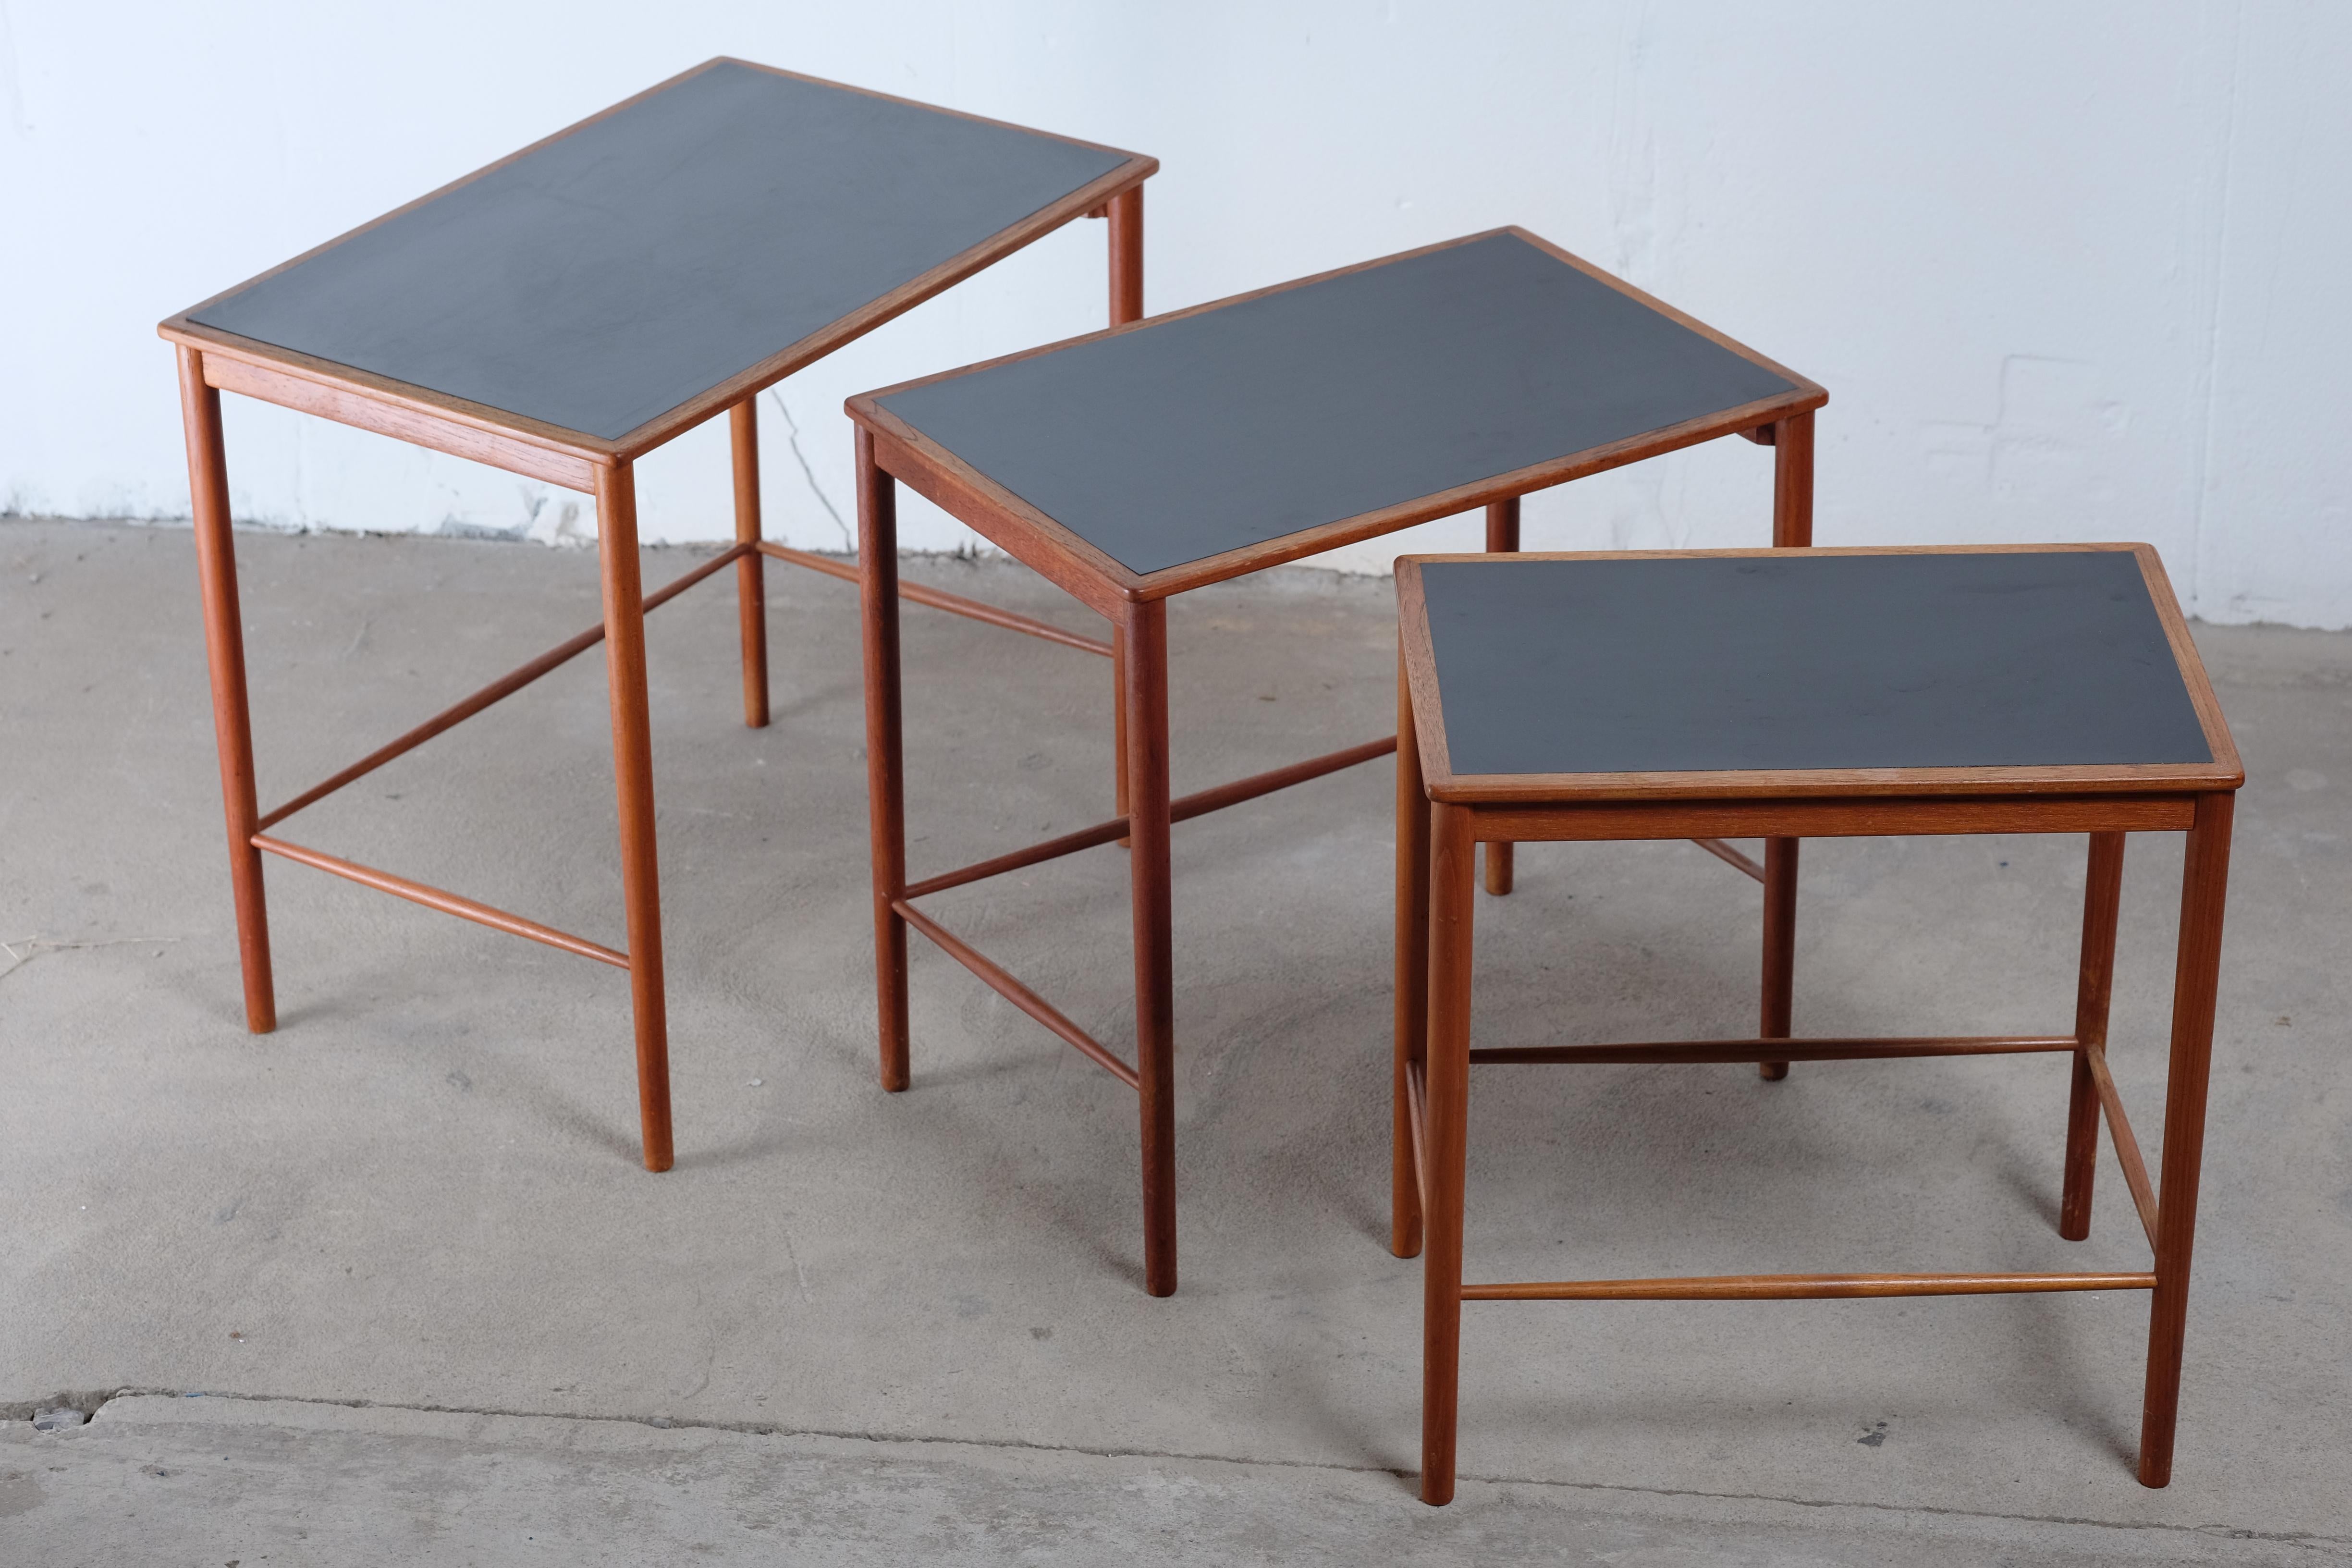 Mid-Century Modern Teak Nesting Tables by Grete Jalk for Poul Jeppesens Møbelfabrik, 1950s For Sale